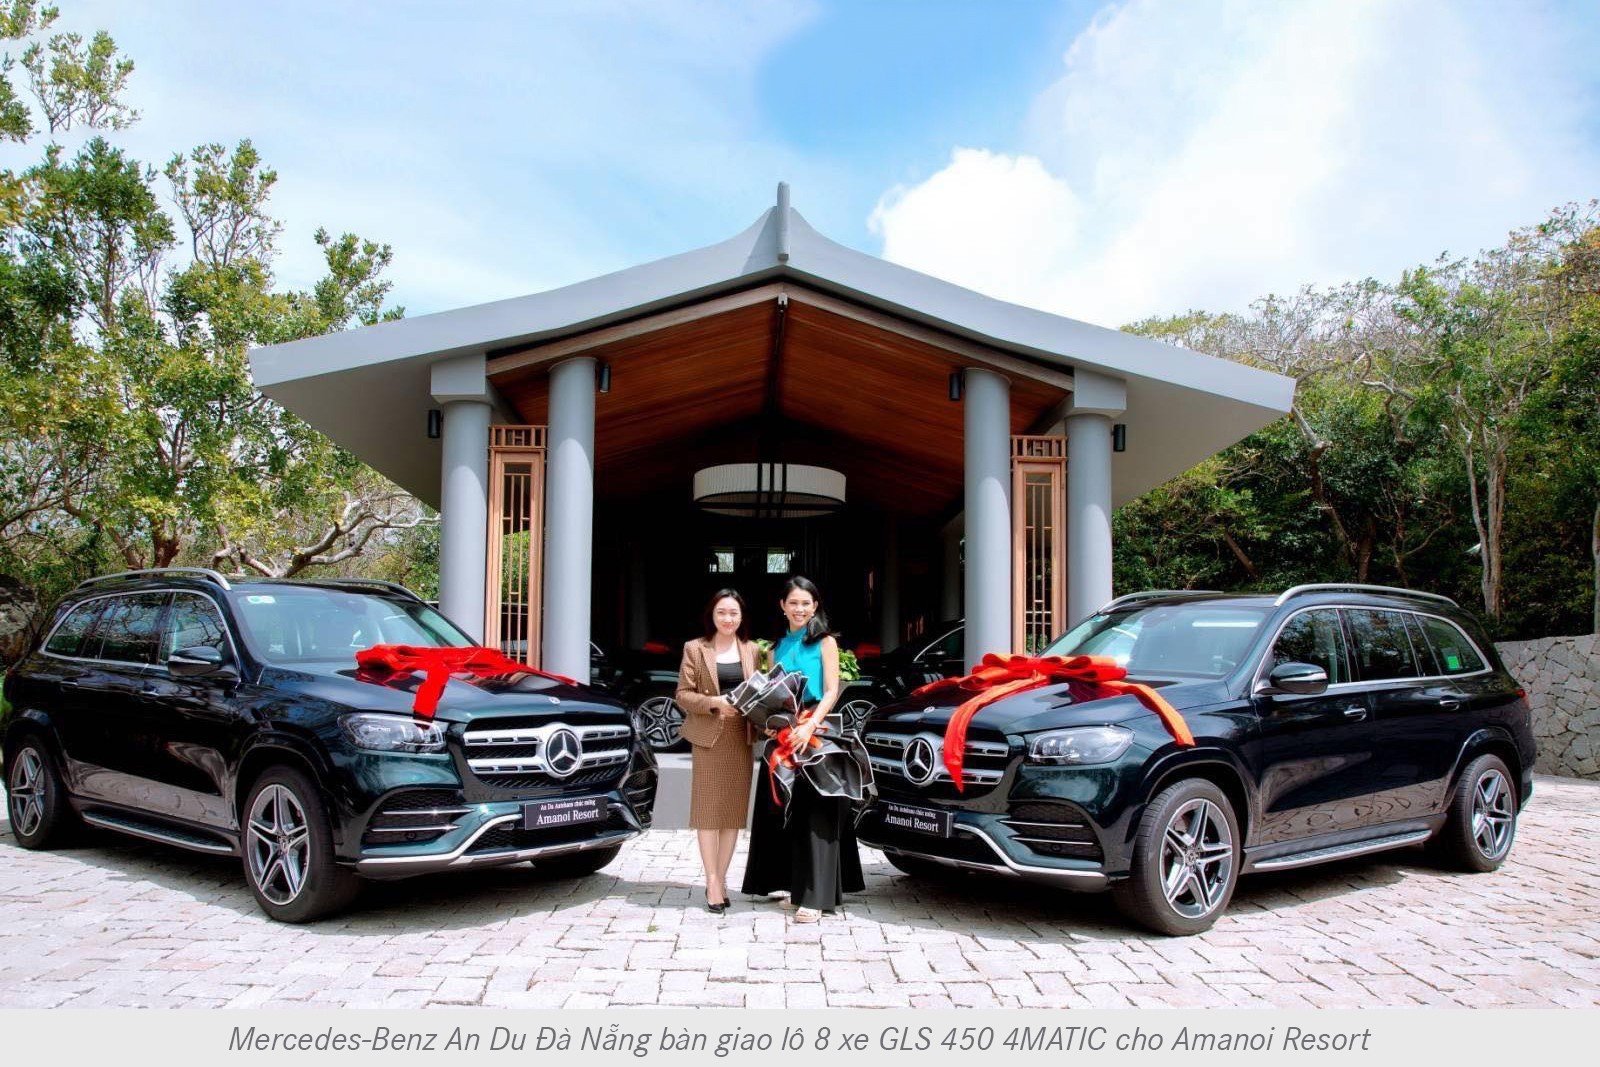 Hai resort khủng bậc nhất Việt Nam đầu tư lớn: Mua 10 chiếc GLS 450 trị giá hơn 50 tỷ đồng từ Mercedes-Benz An Du Đà Nẵng - Ảnh 1.